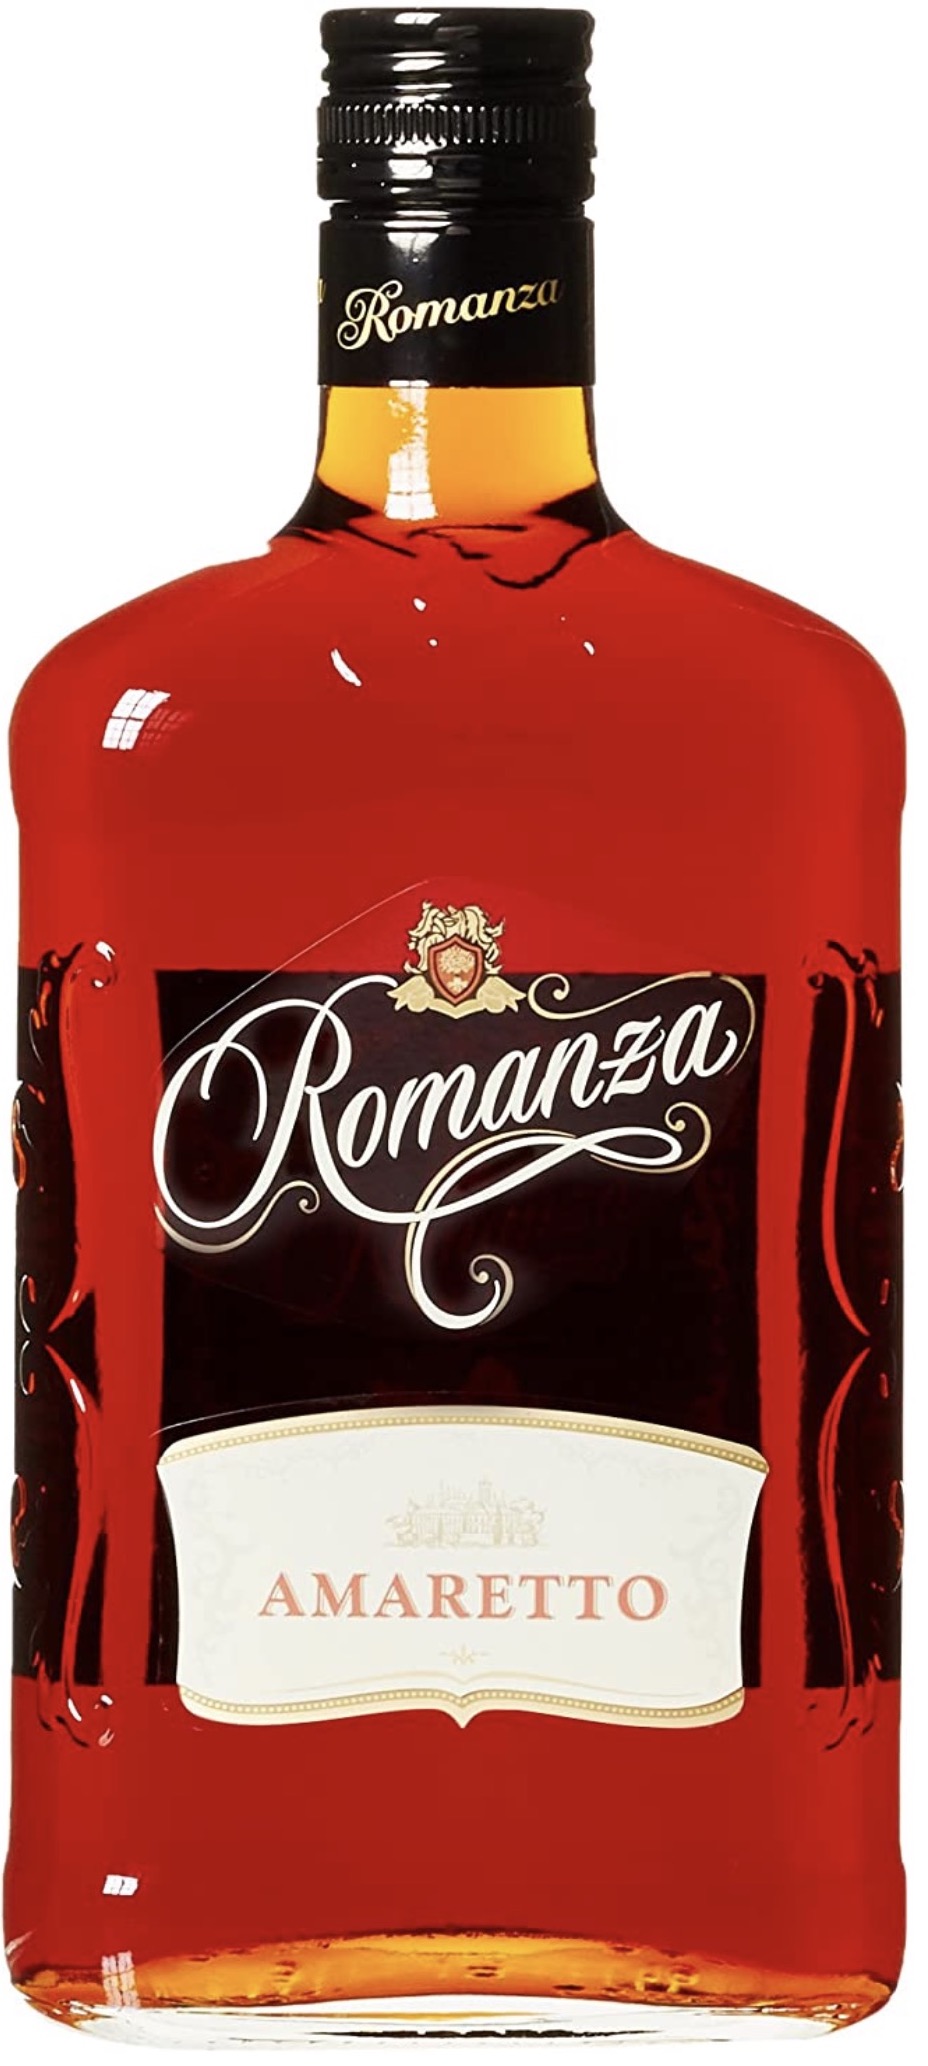 Romanza Amaretto Likör 20% vol. 0,7L